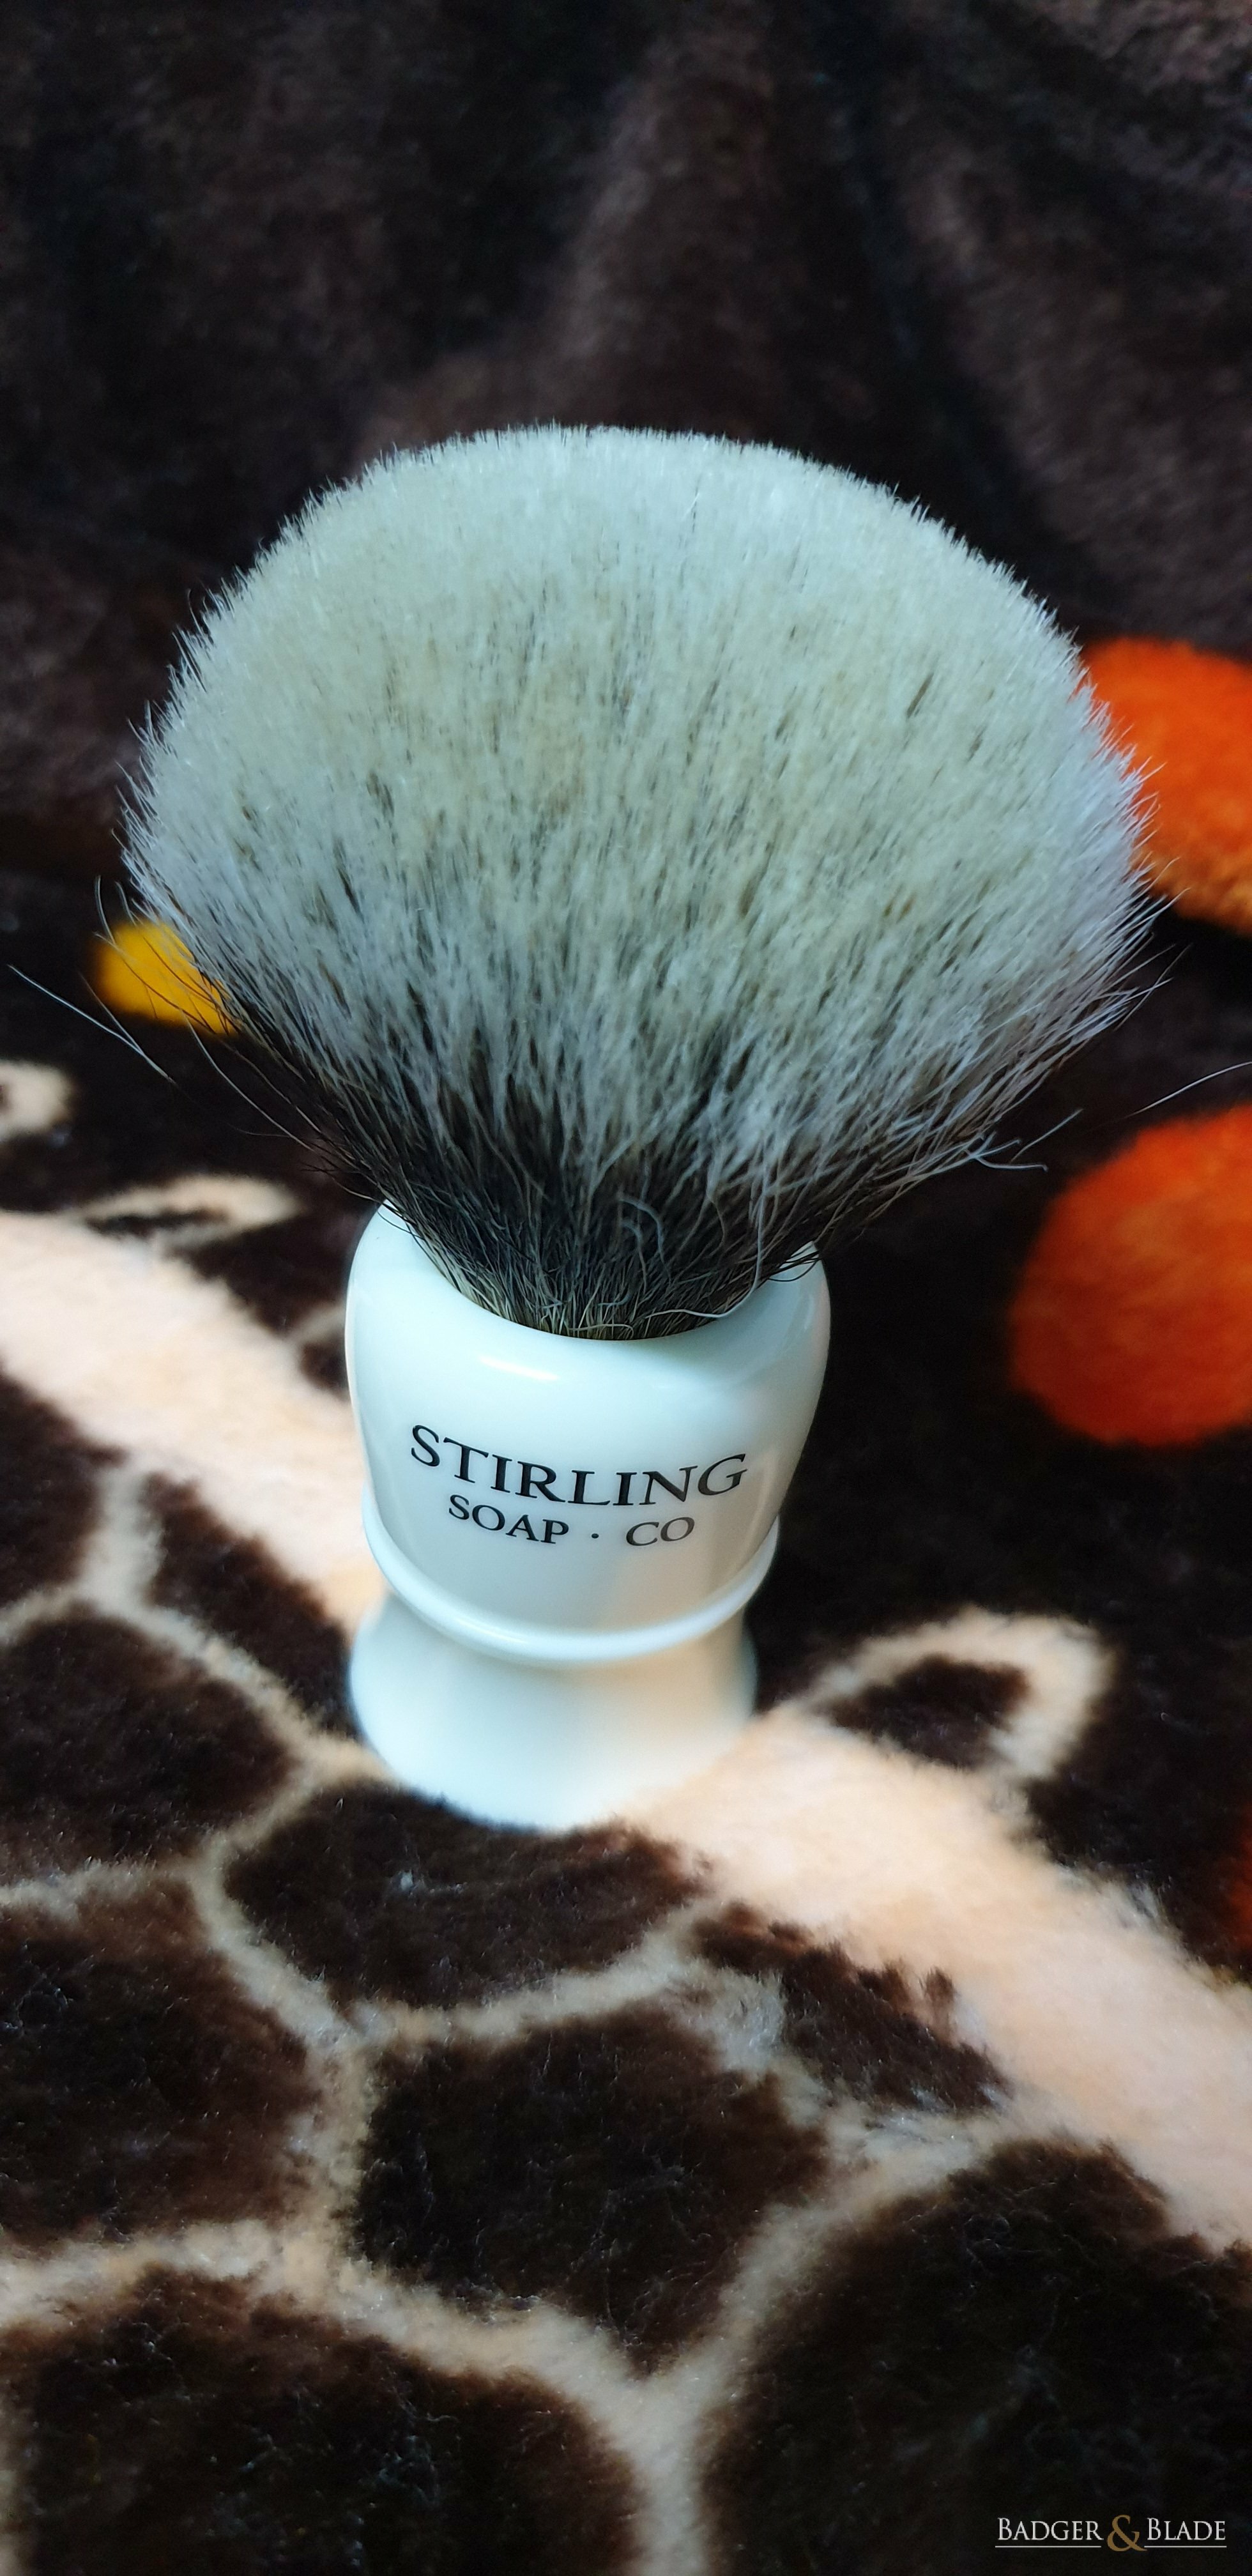 Stirling Soap Co 26mm Badger